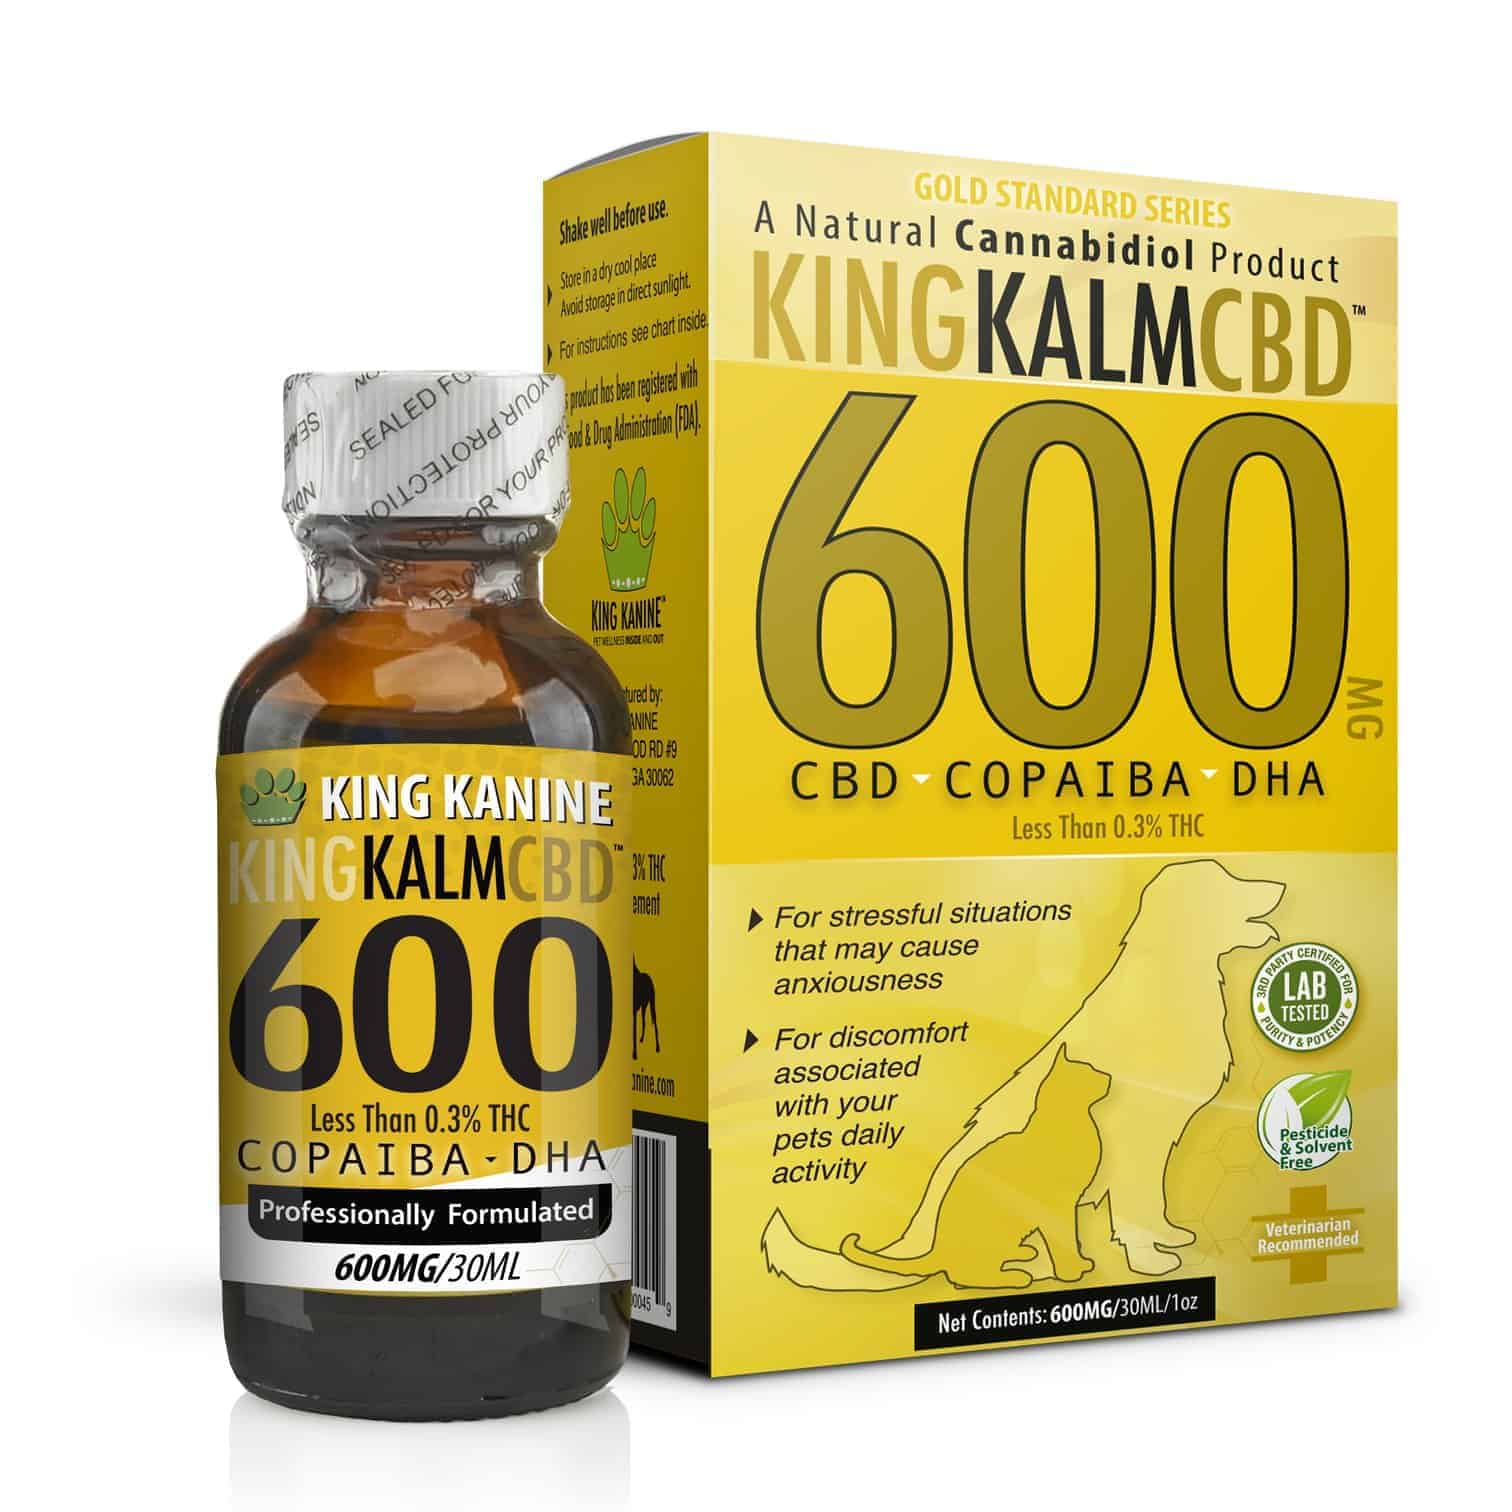 King Kanine CBD Coupon Code King Kalm 600mg CBD with Copaiba Krill Oil and DHA